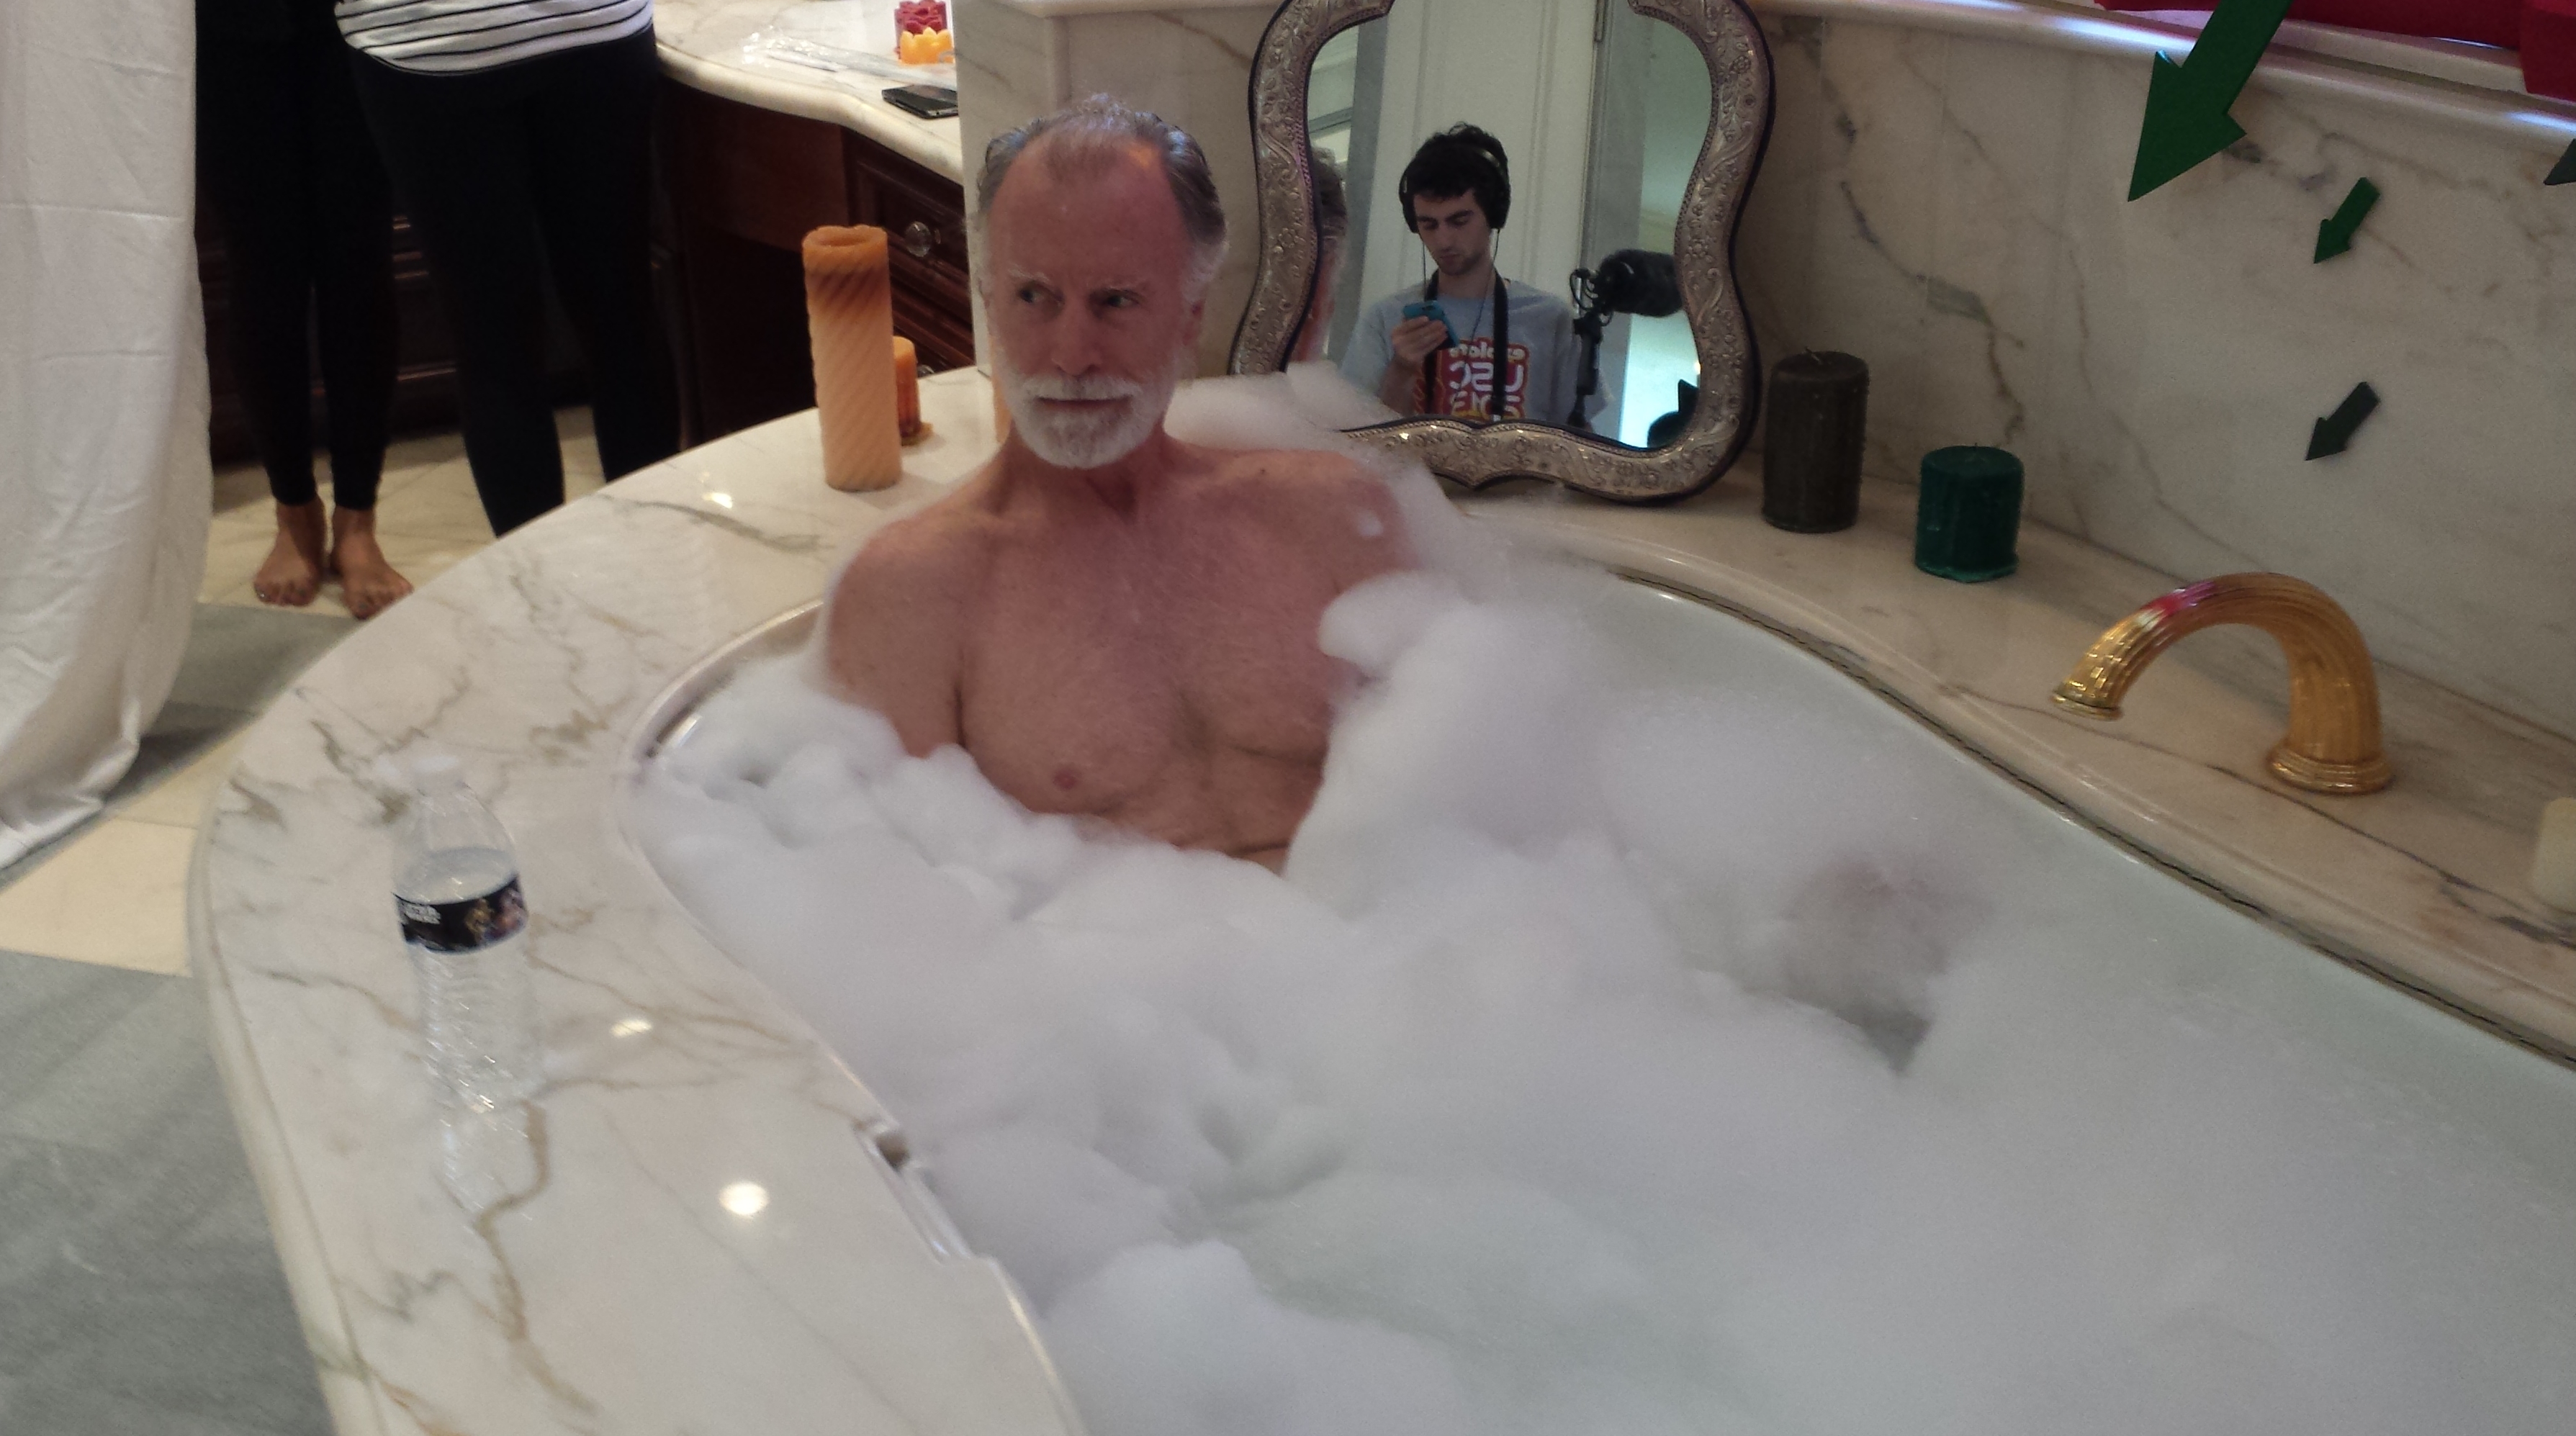 Gebby Go Bath Man Director: Ryan Wagner Producer: Cameron Covall